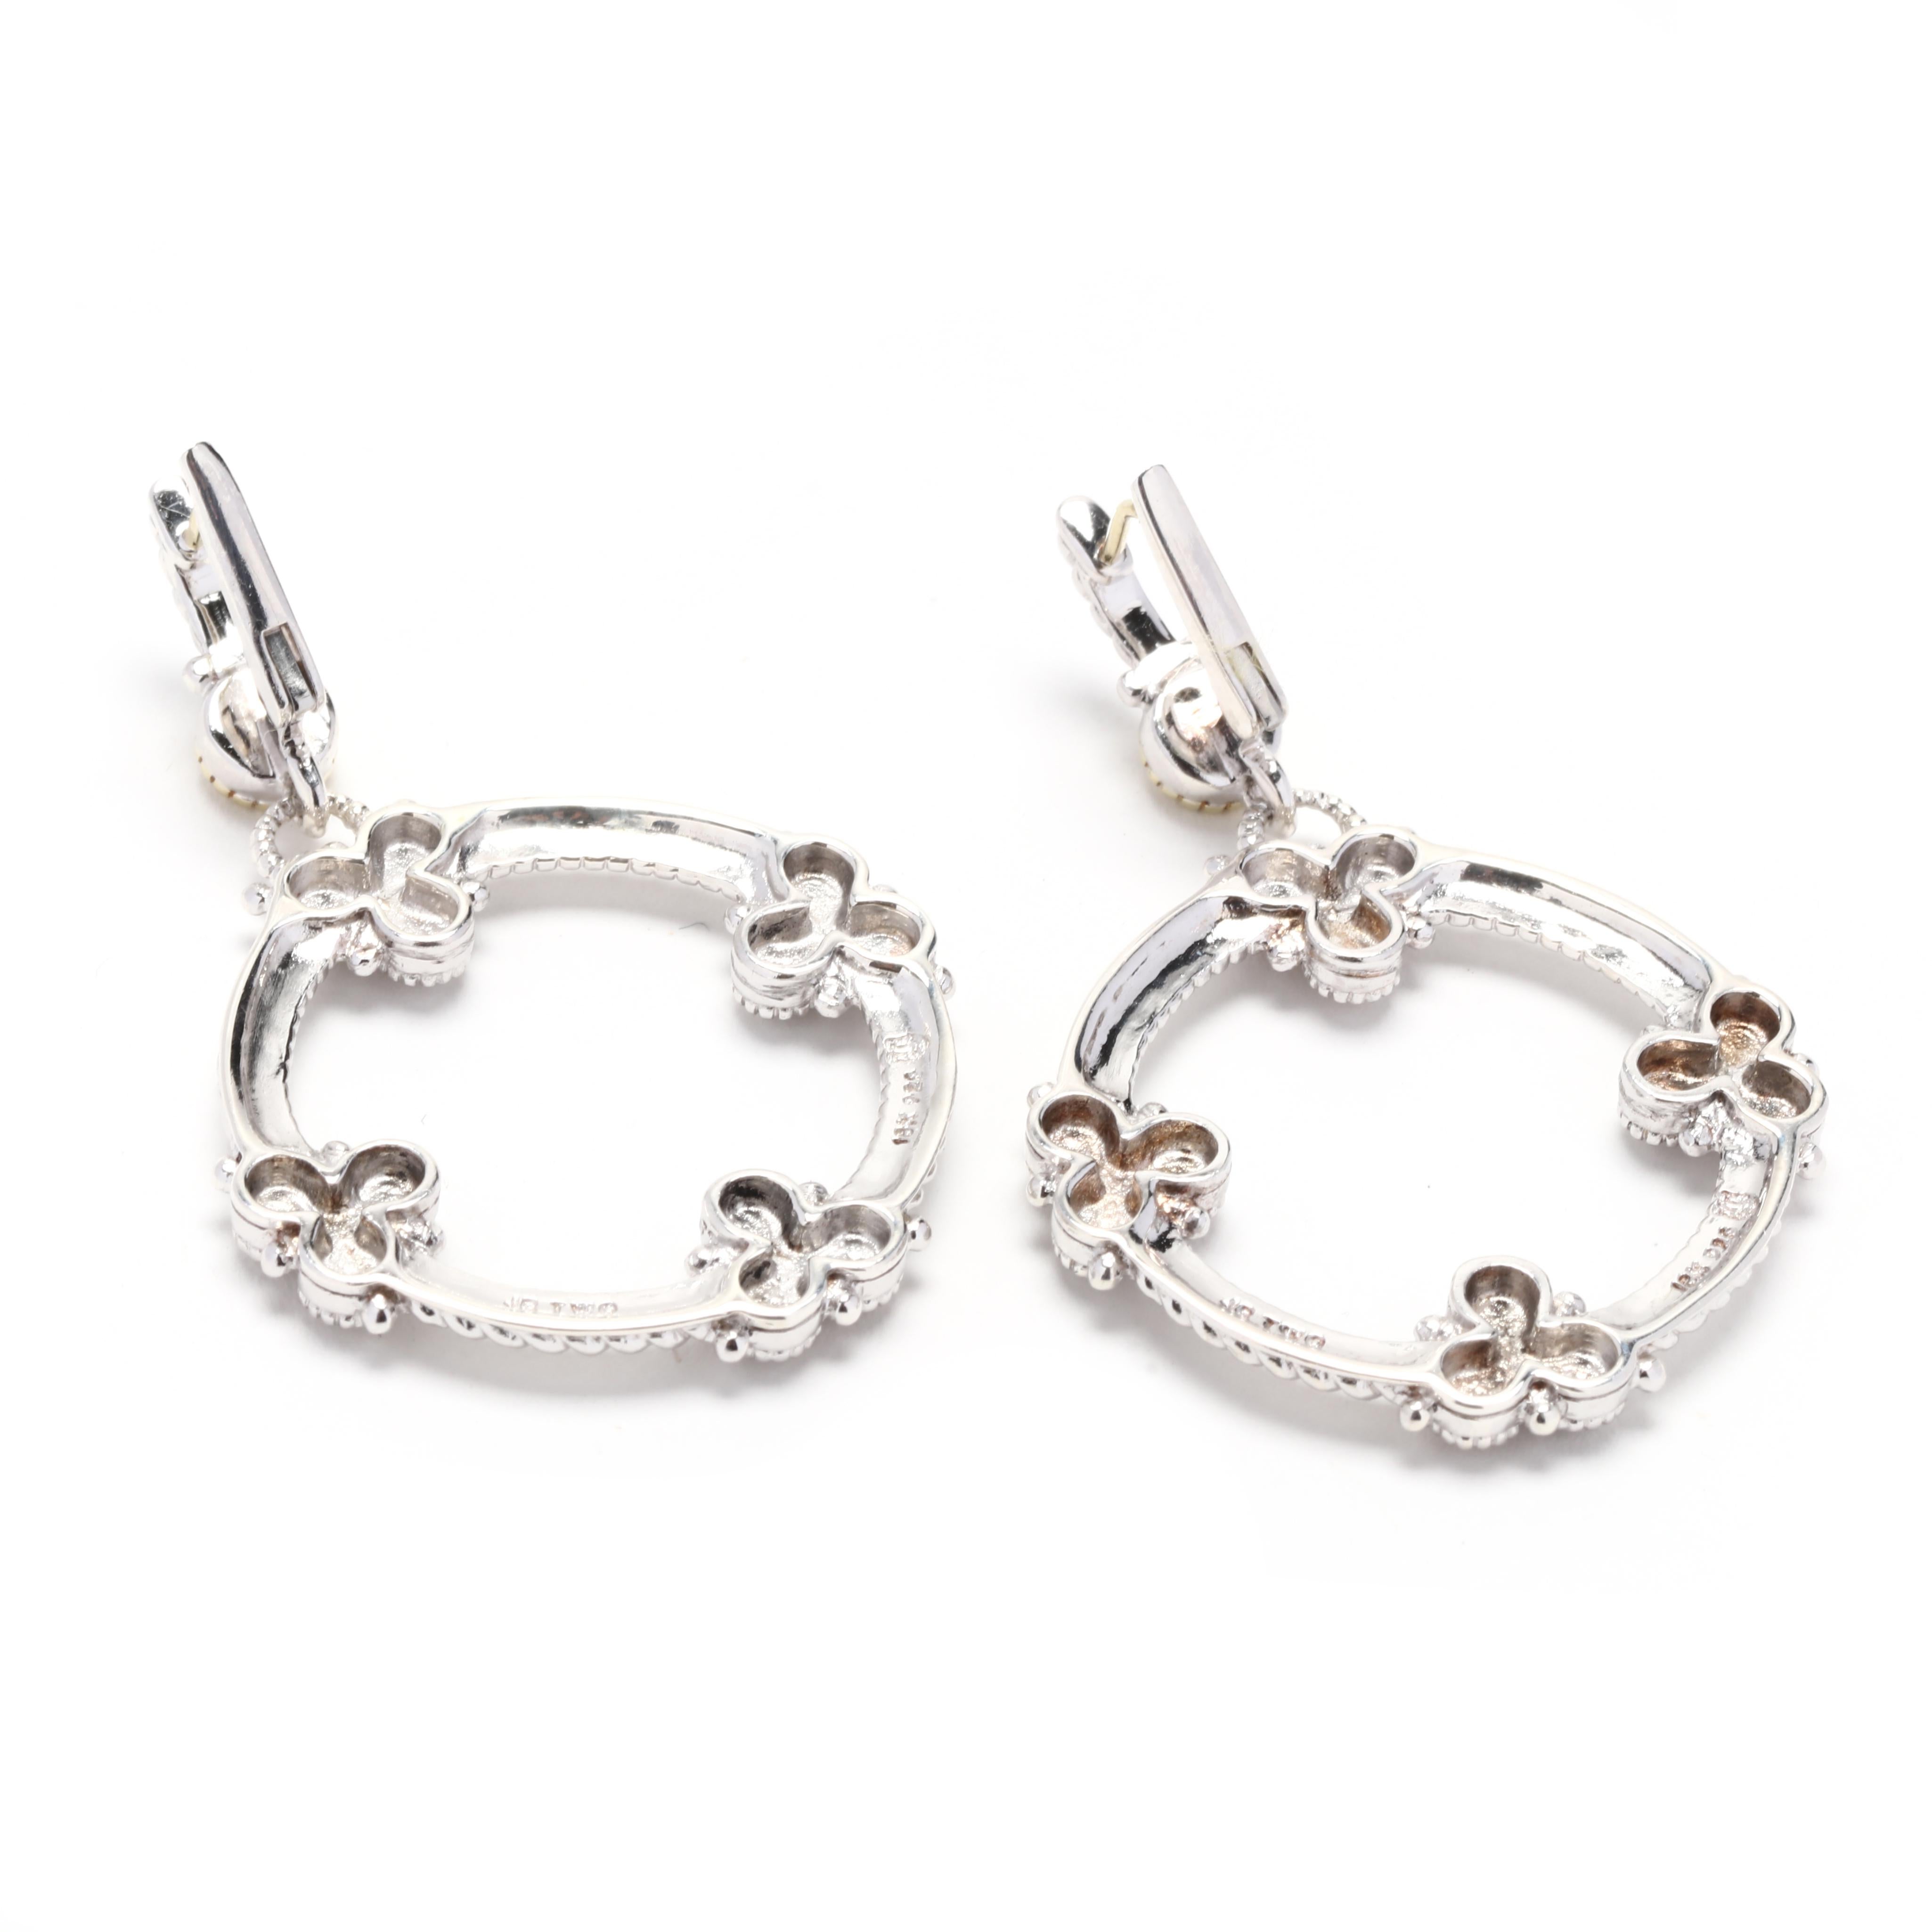 Diese atemberaubenden Judith Ripka Round Diamond Dangle Earrings sind eine perfekte Kombination aus Eleganz und Raffinesse. Diese aus 18 Karat Gelbgold und Sterlingsilber gefertigten Ohrringe sind mit einem runden Diamanten besetzt, der an einem